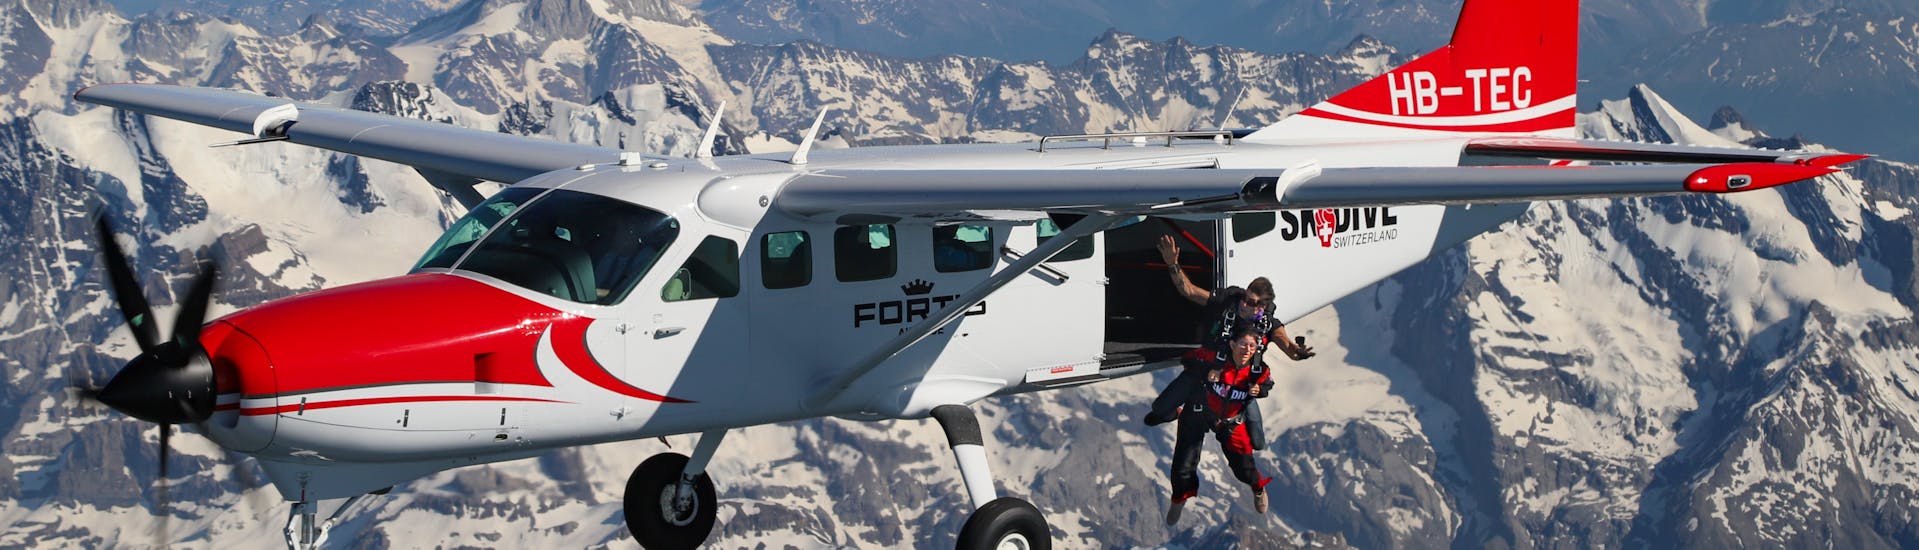 Das Flugzeug, das wir während des Tandem Fallschirmsprung in Interlaken in der Schweiz (4000m) mit Skydive Switzerland benutzen werden.